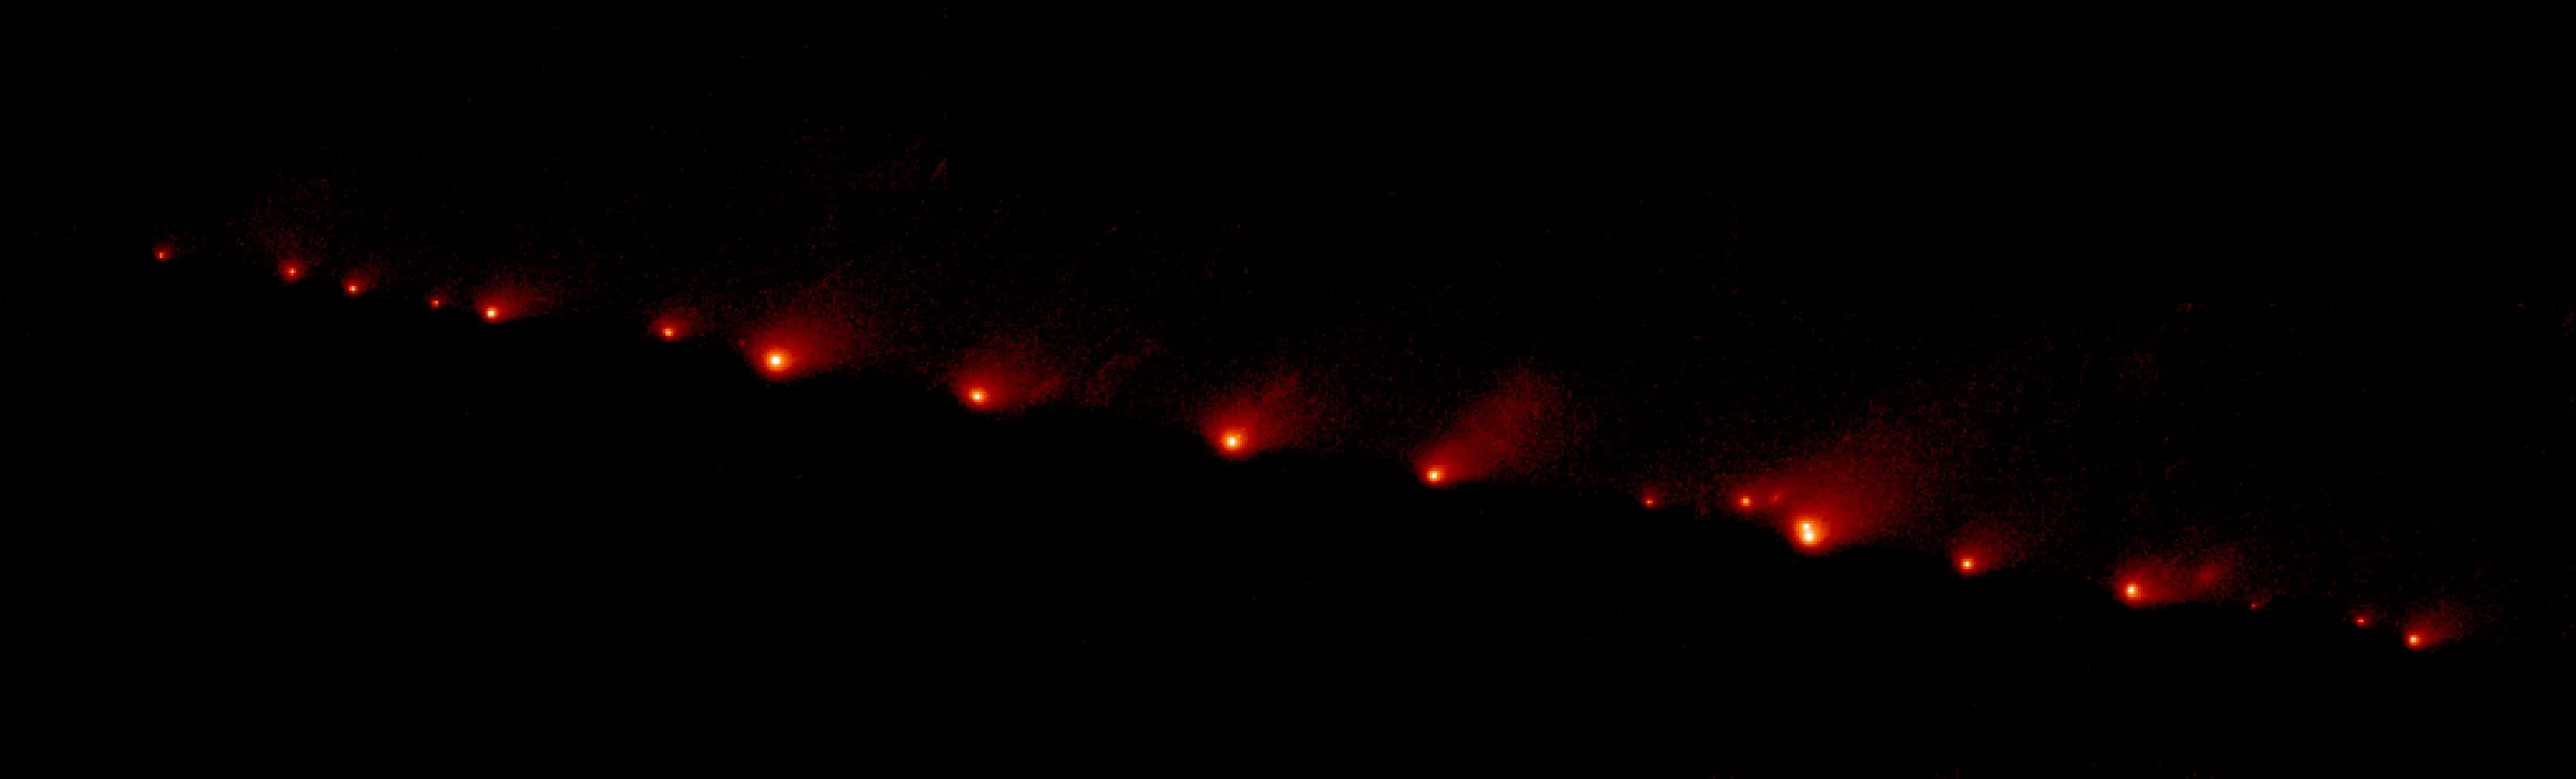 21 blazing fragments of Comet Shoemaker-Levy 9